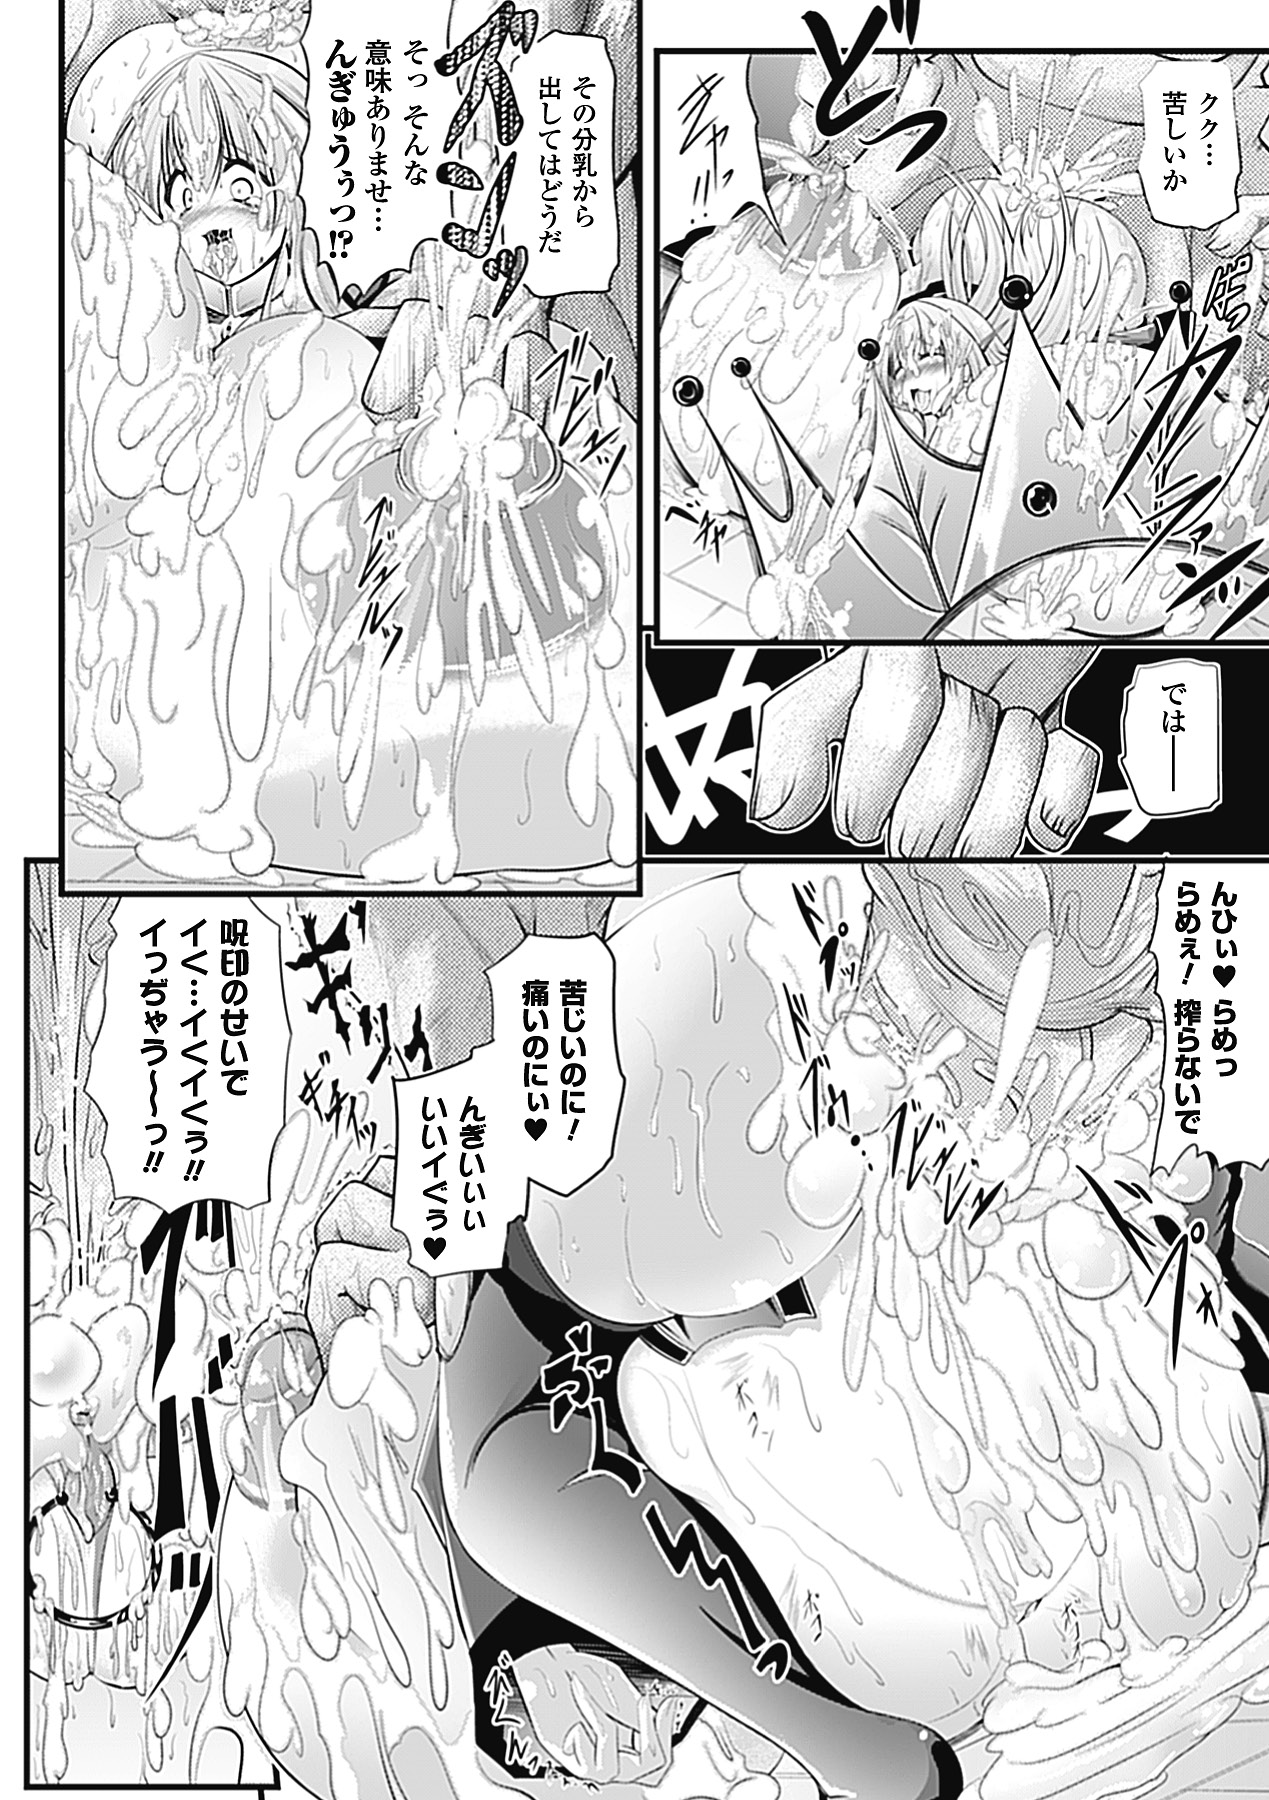 huge_breasts_manga